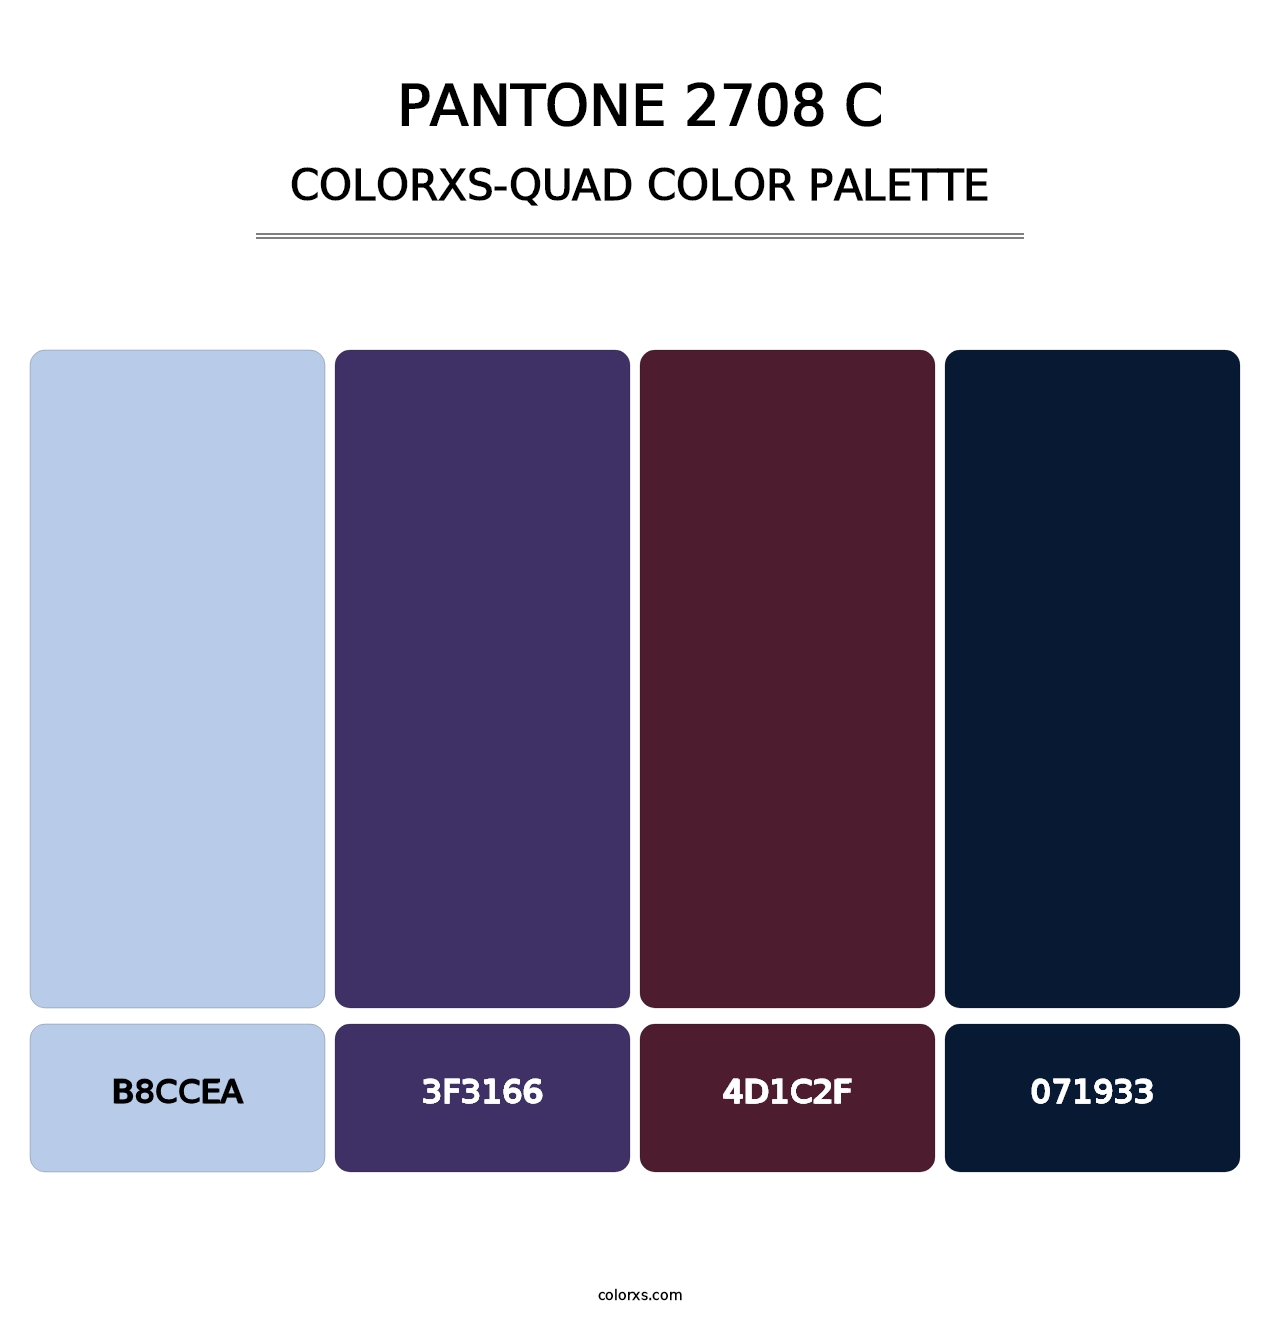 PANTONE 2708 C - Colorxs Quad Palette